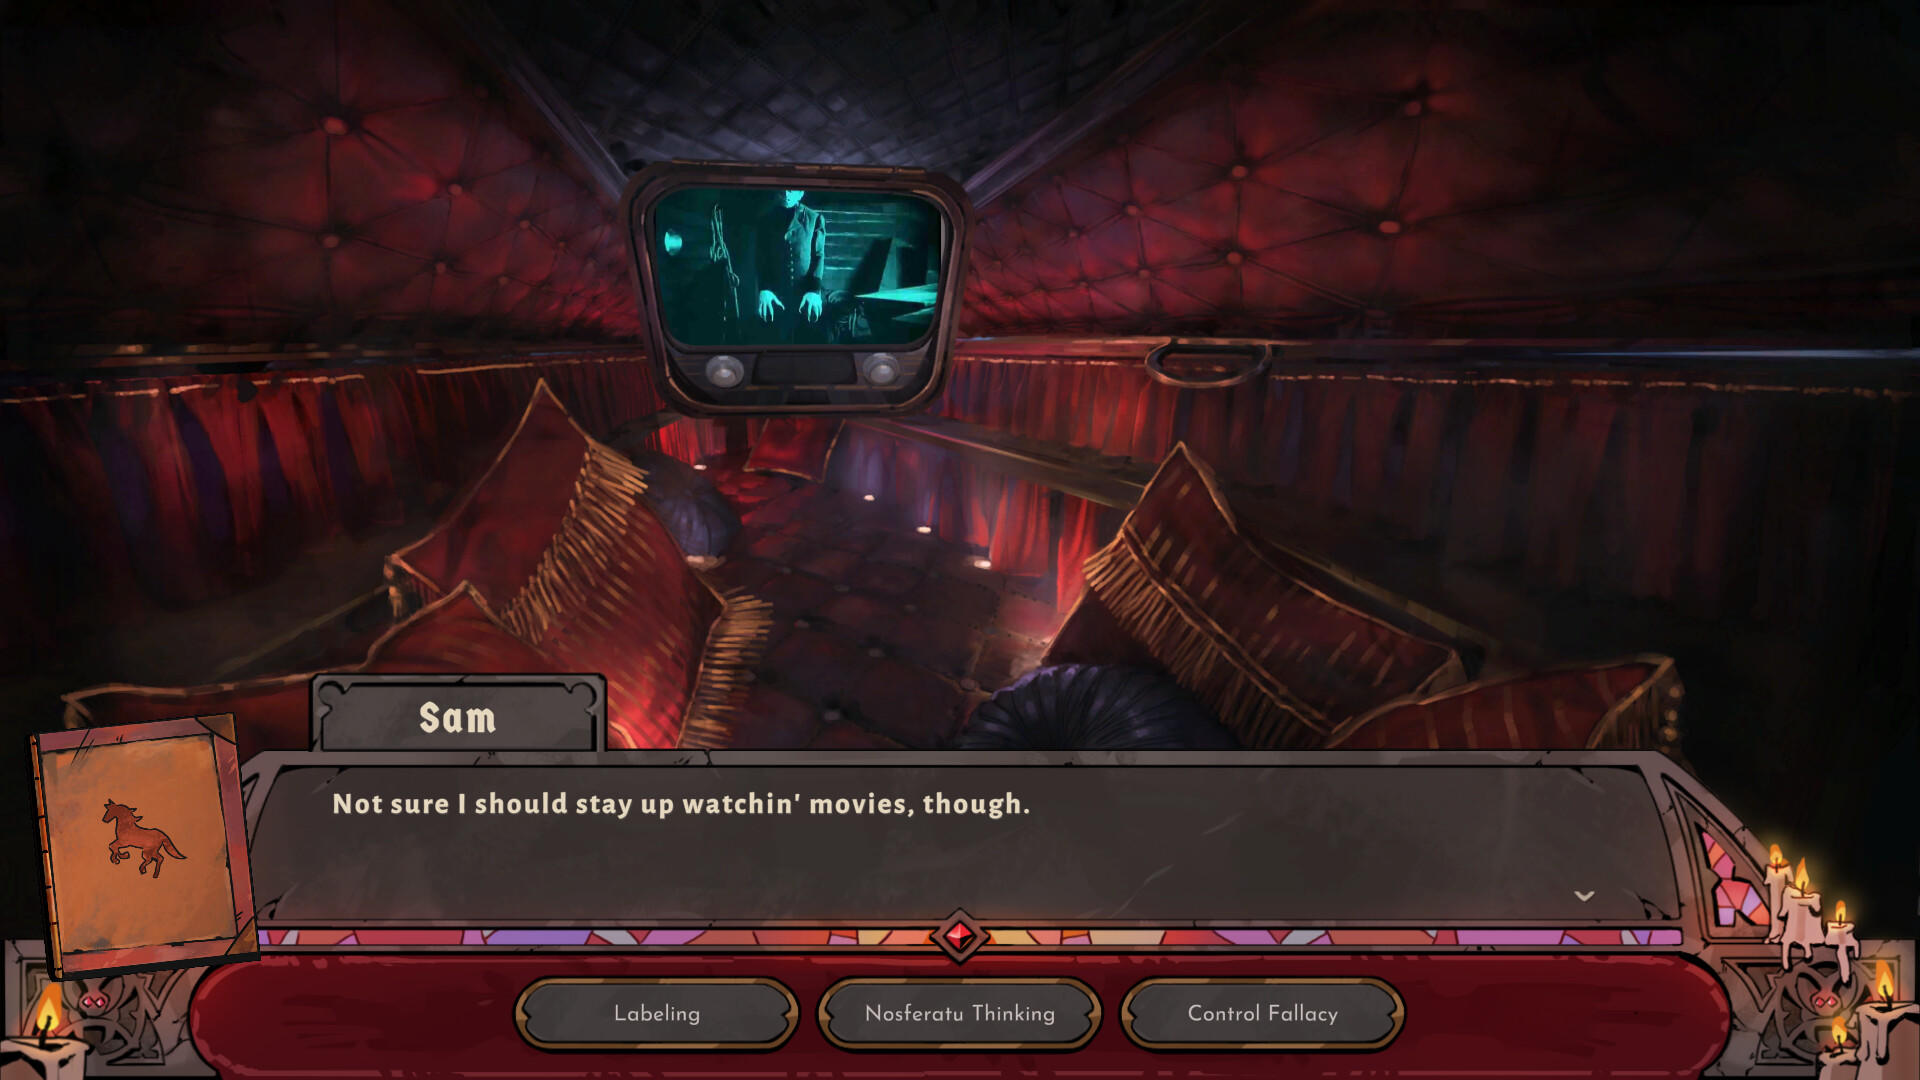 Vampire Therapist screenshot game